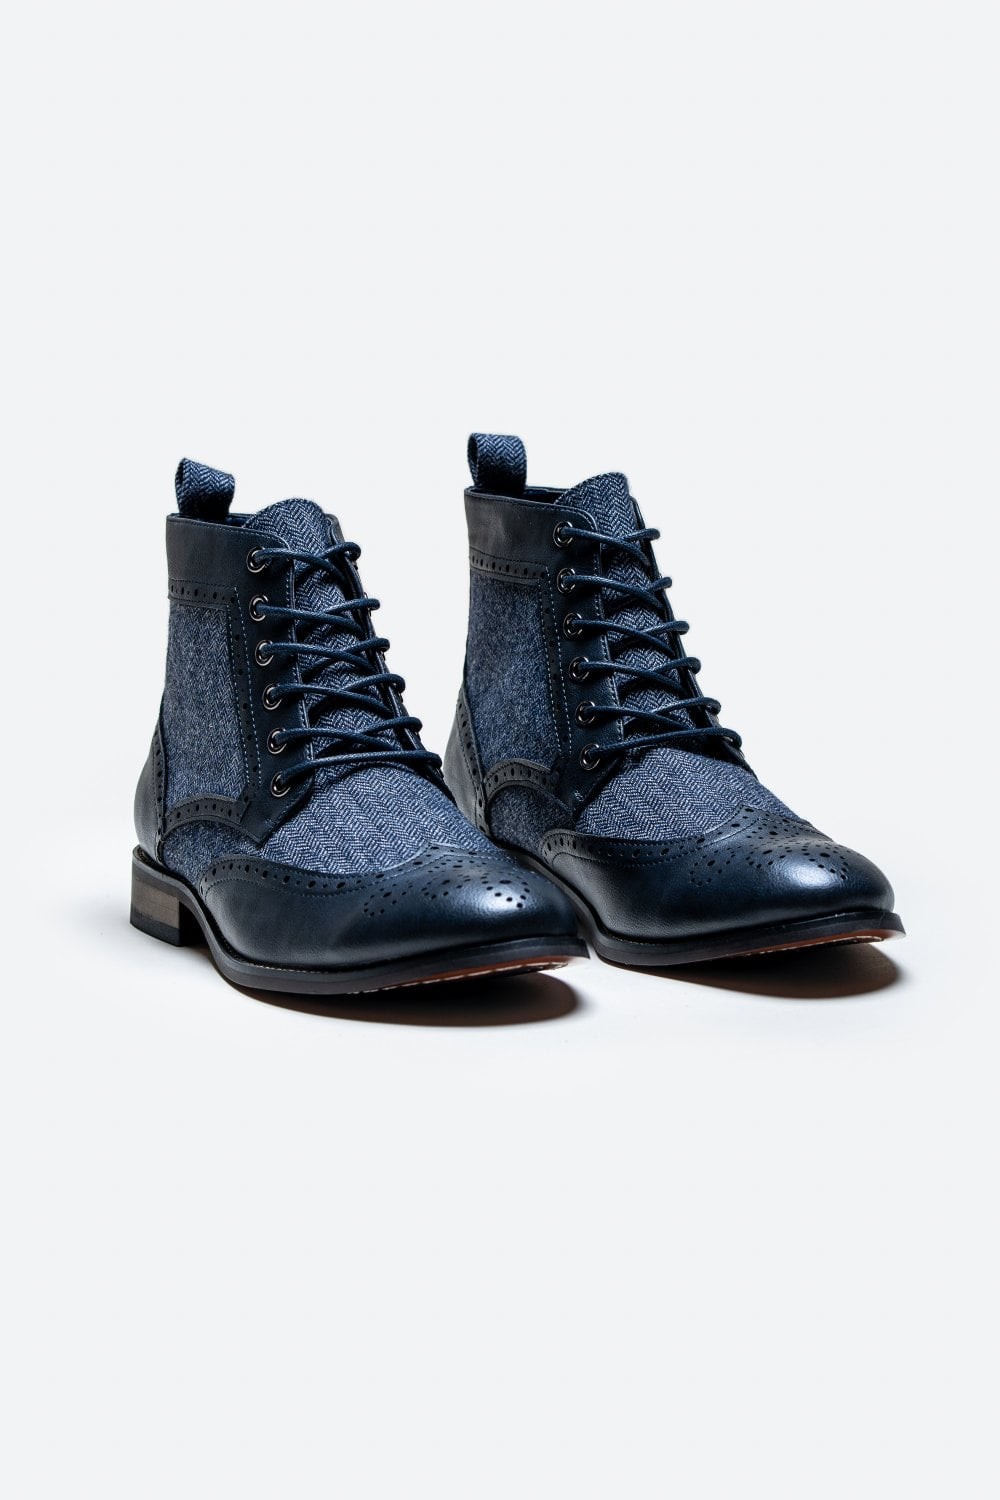 Chaussures brogues montantes à lacets pour hommes - JONES - Bleu marine